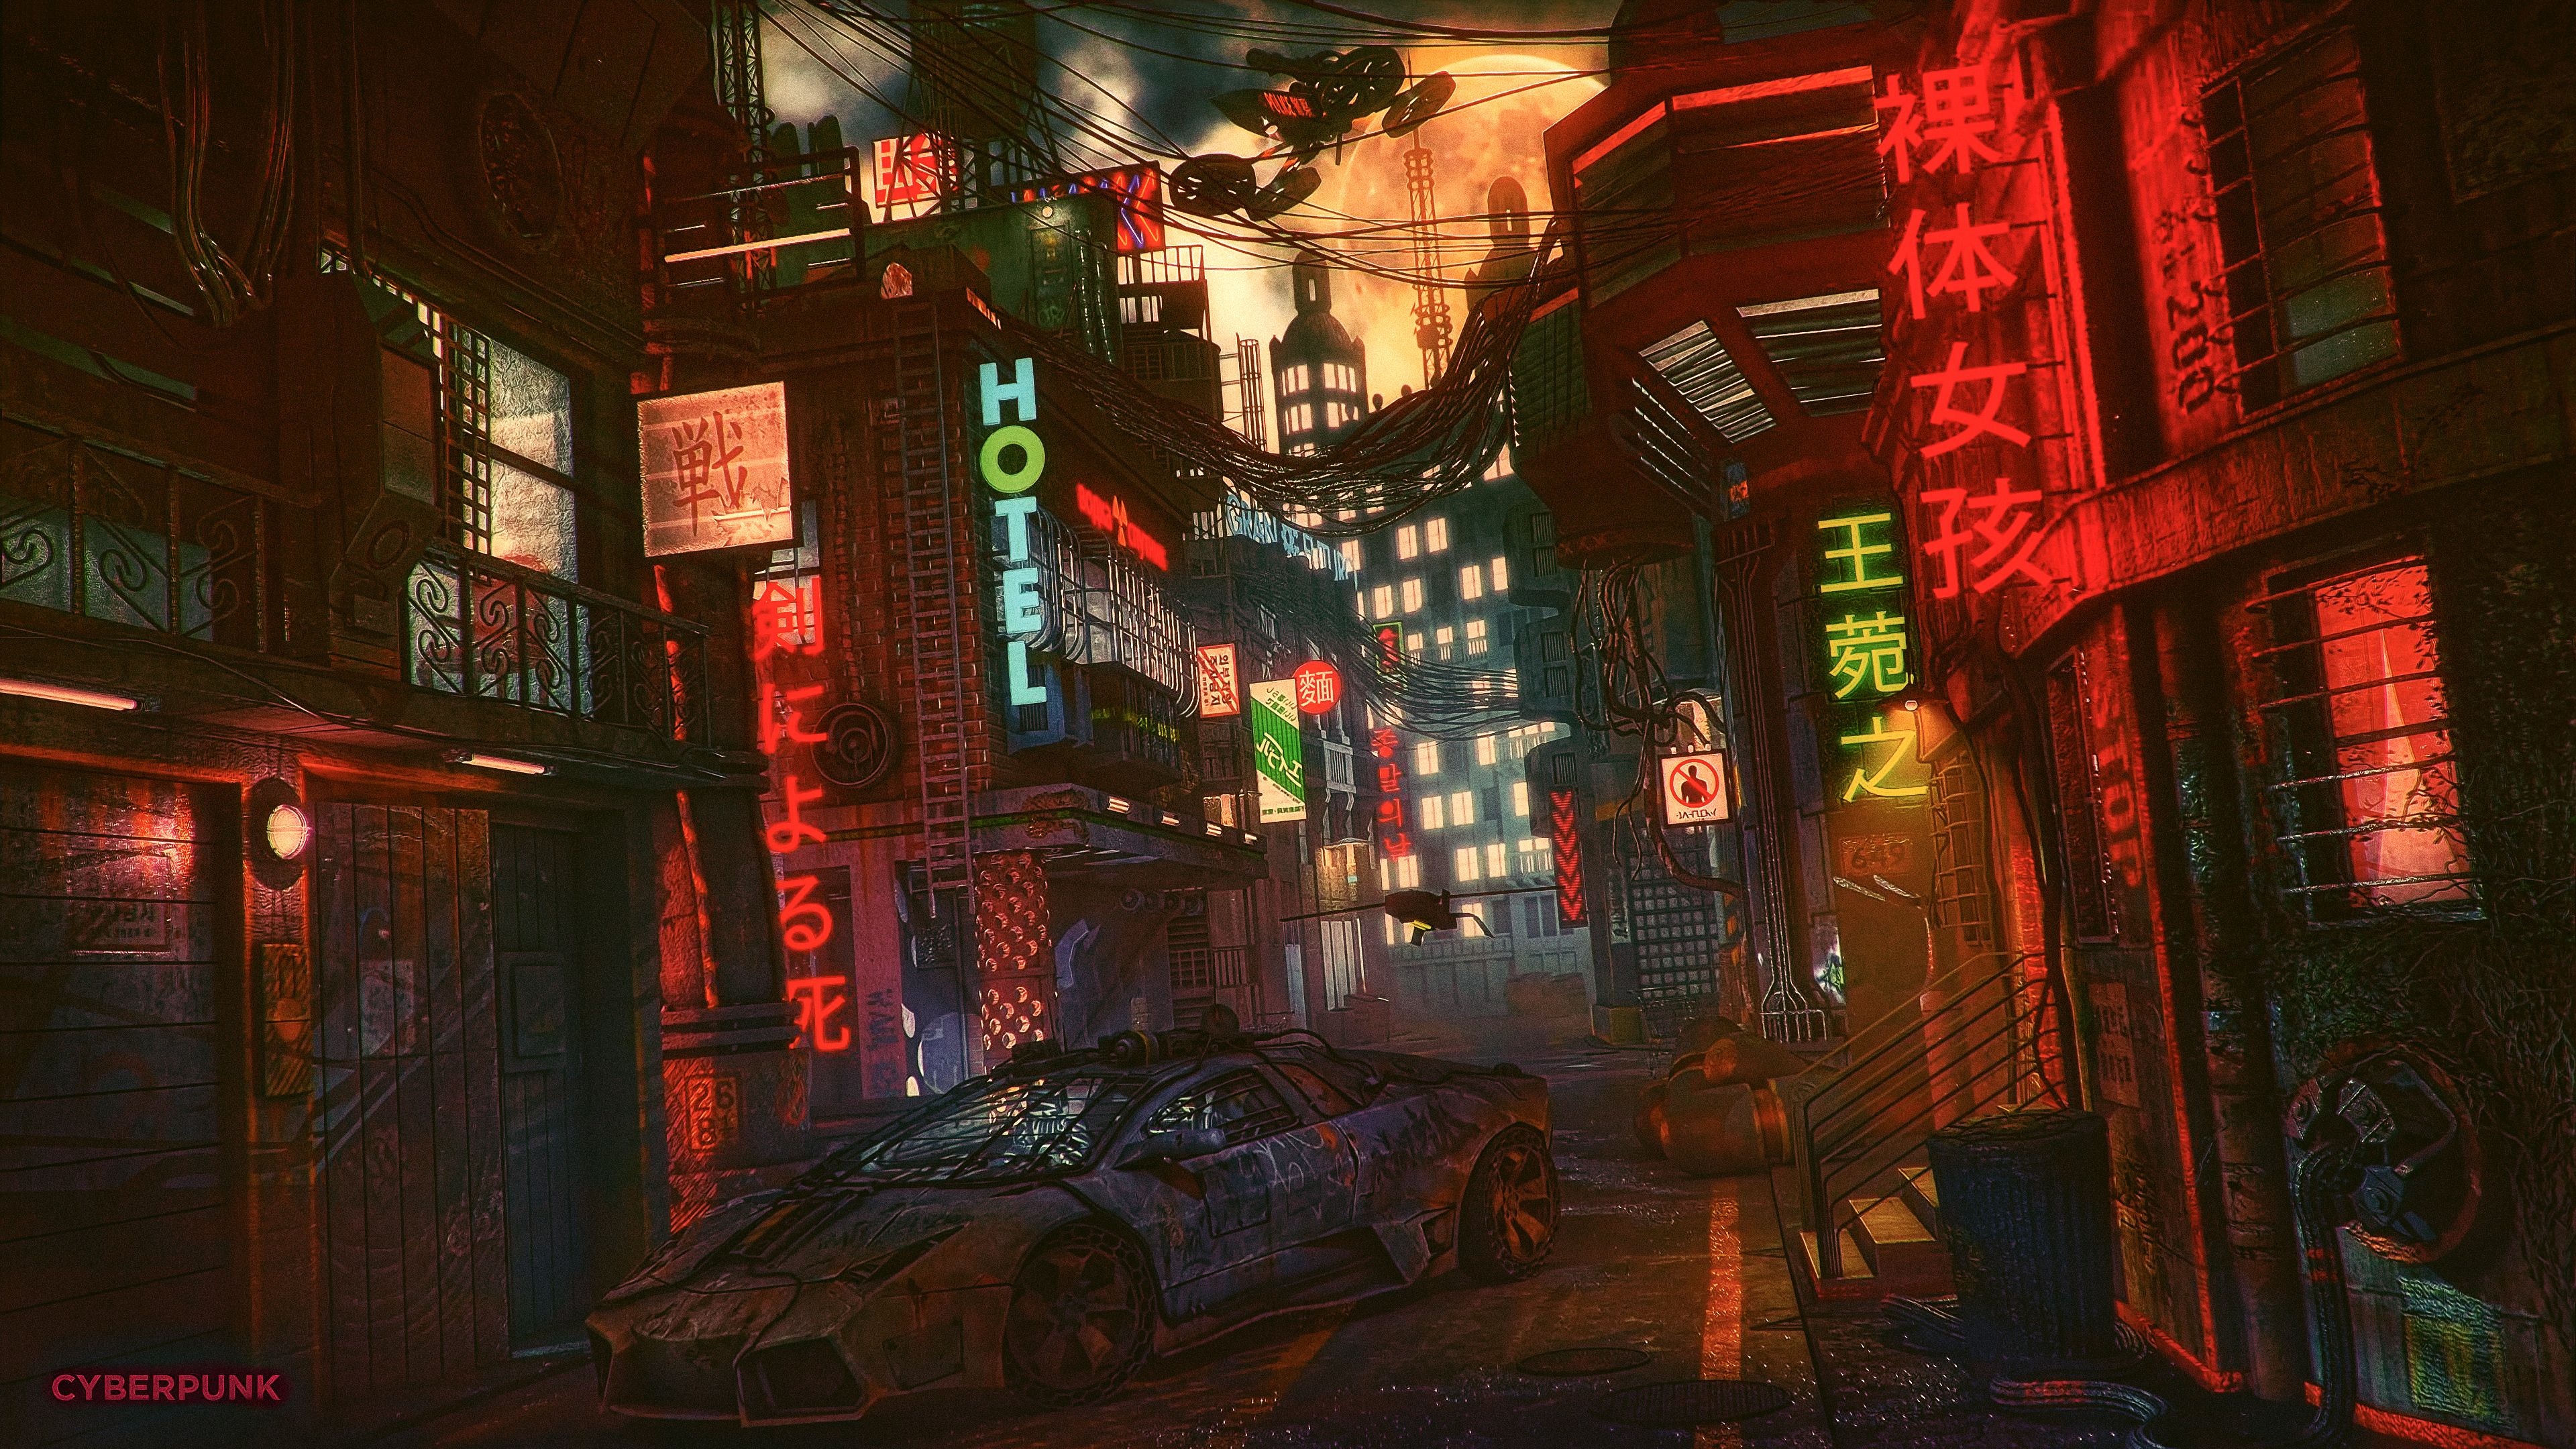 Futuristic Cyber City Lamborghini Night 4k, HD Artist, 4k Wallpaper, Image, Background, Photo and Picture